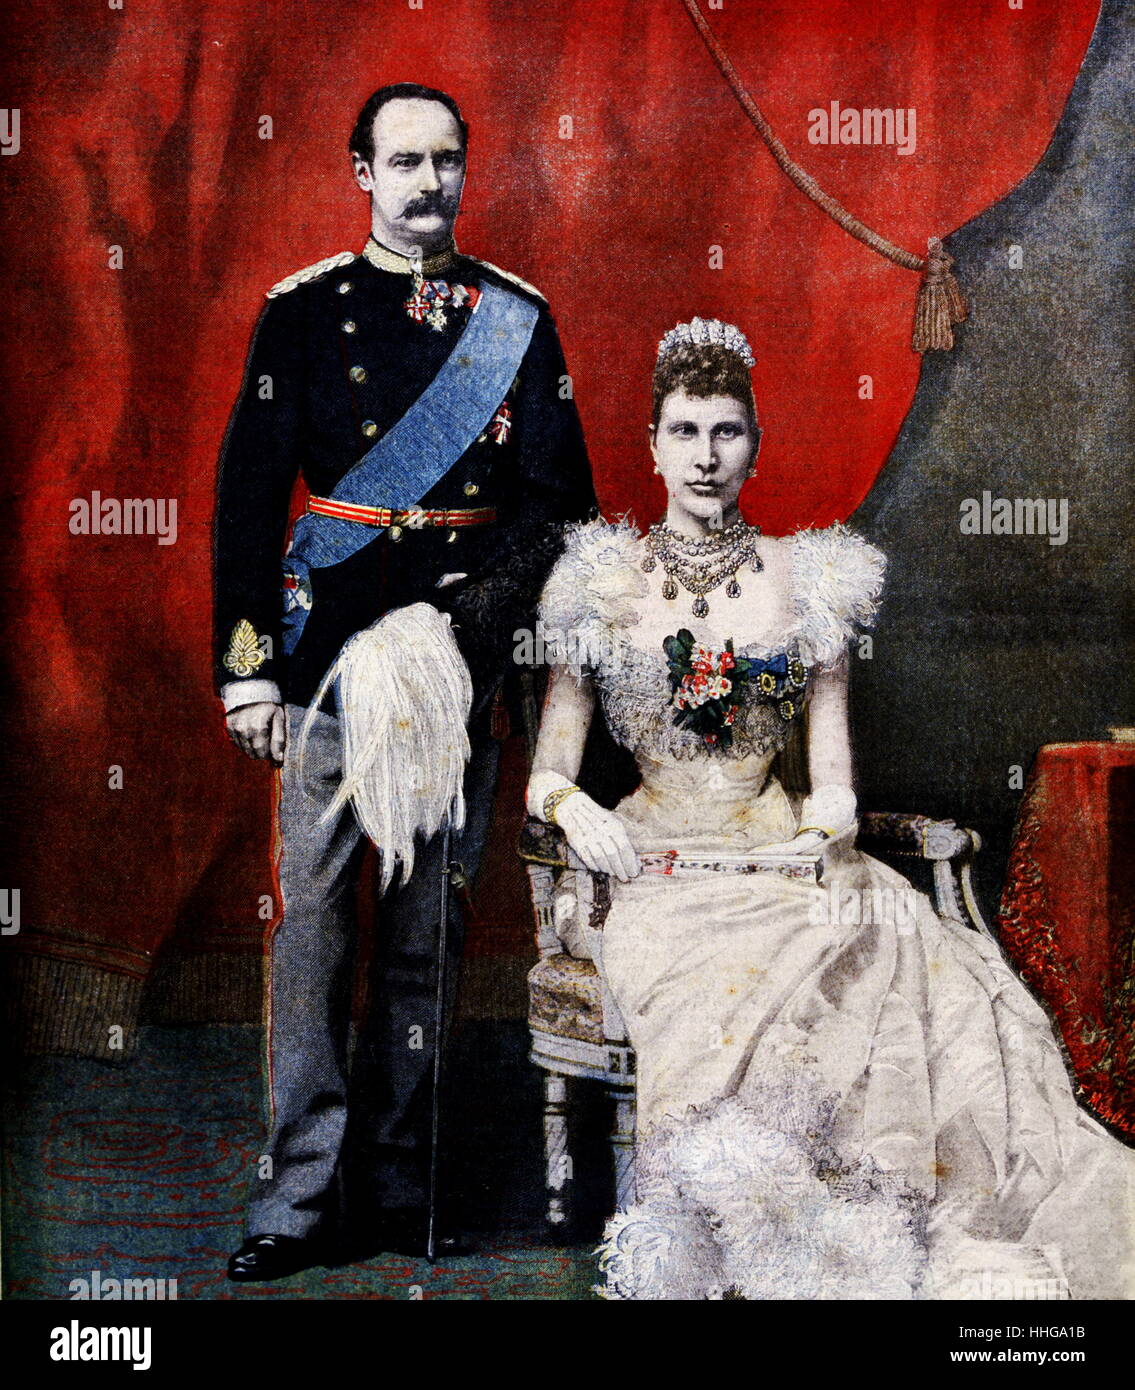 Krone Prinz und Prinzessin von Dänemark im Jahr 1896. Frederik VIII (1843 - 1912) war König von Dänemark von 1906 bis 1912. Vor seinem Beitritt, diente er als Kronprinz für 43 Jahre. Louise Josephine Eugenie von Schweden (1851 - 1926) war Königin von Dänemark als Ehefrau von König Friedrich VIII. Stockfoto